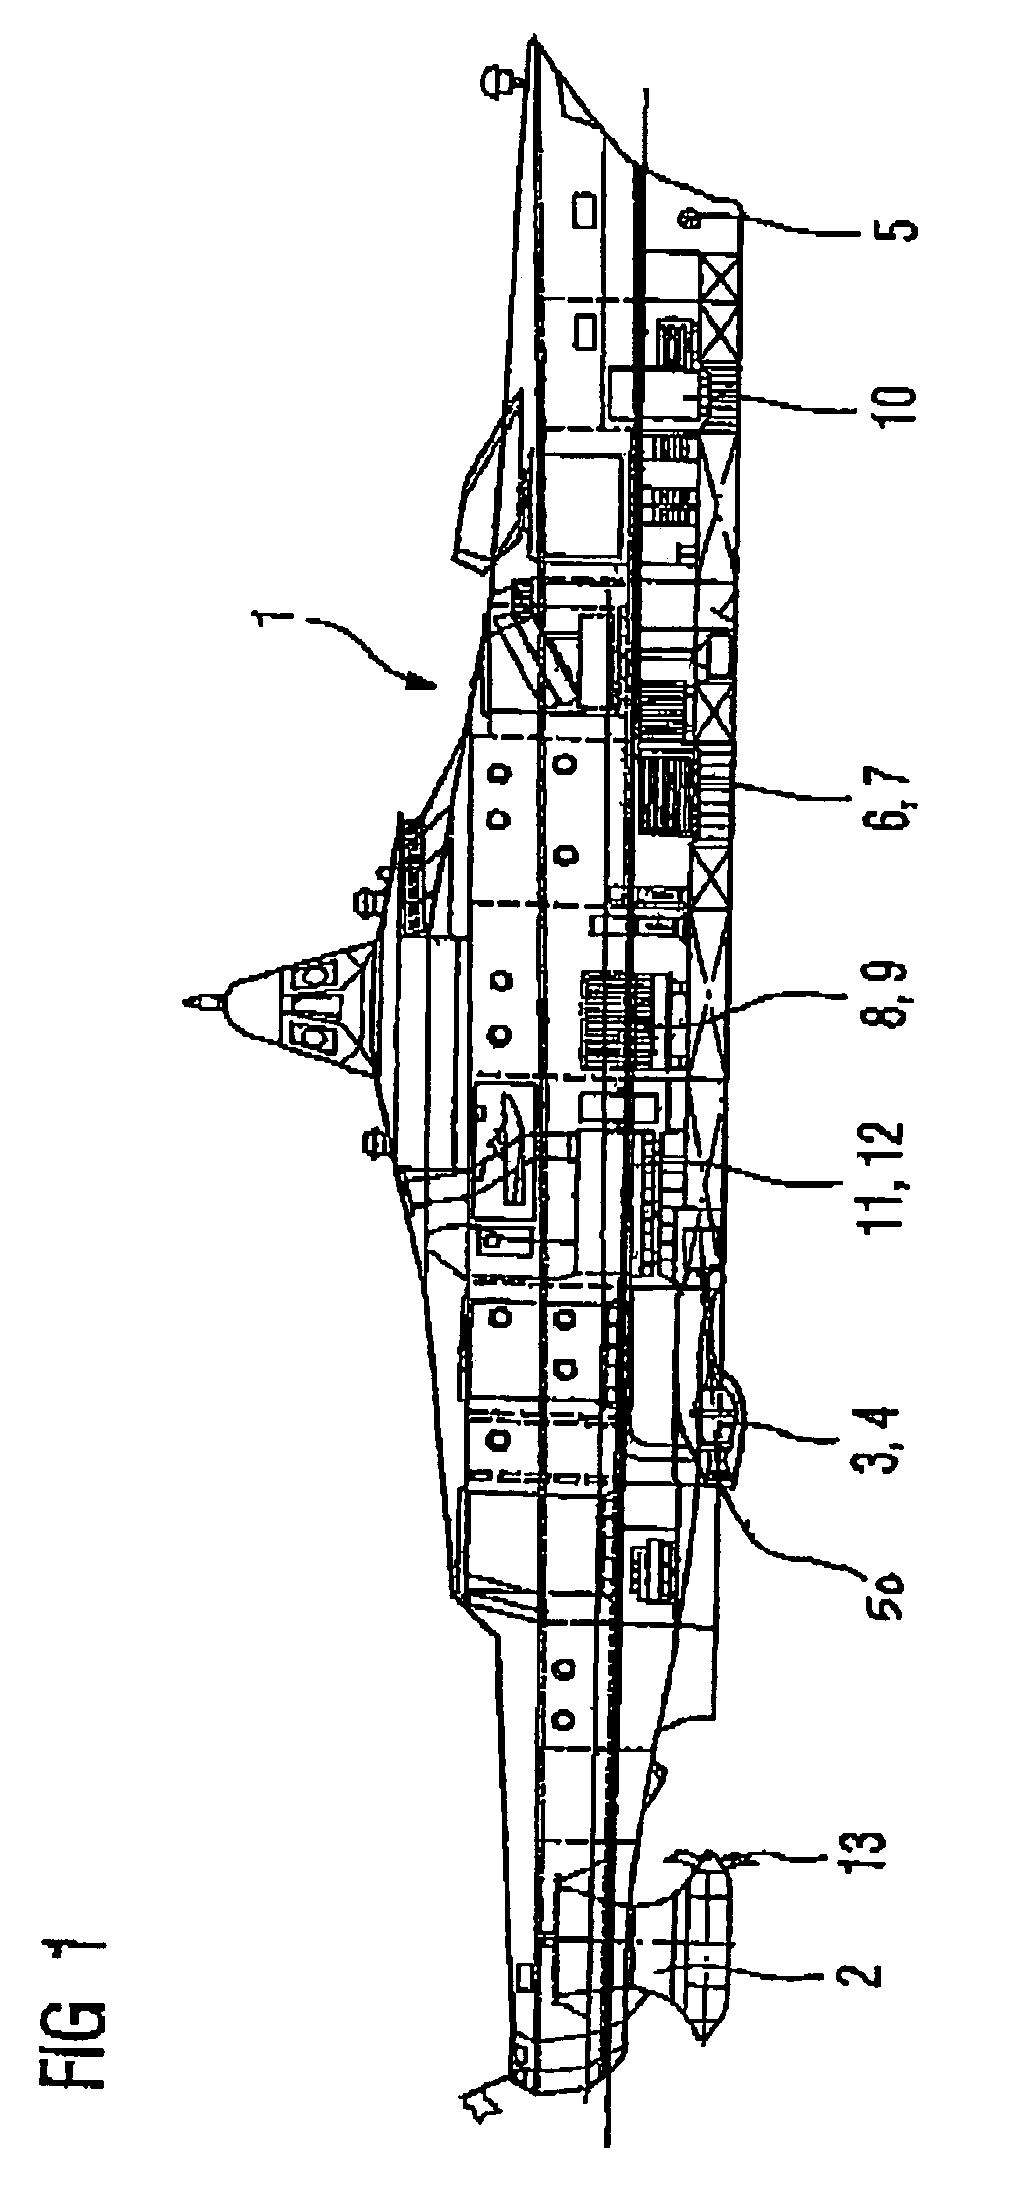 Corvette ship-type equipment system